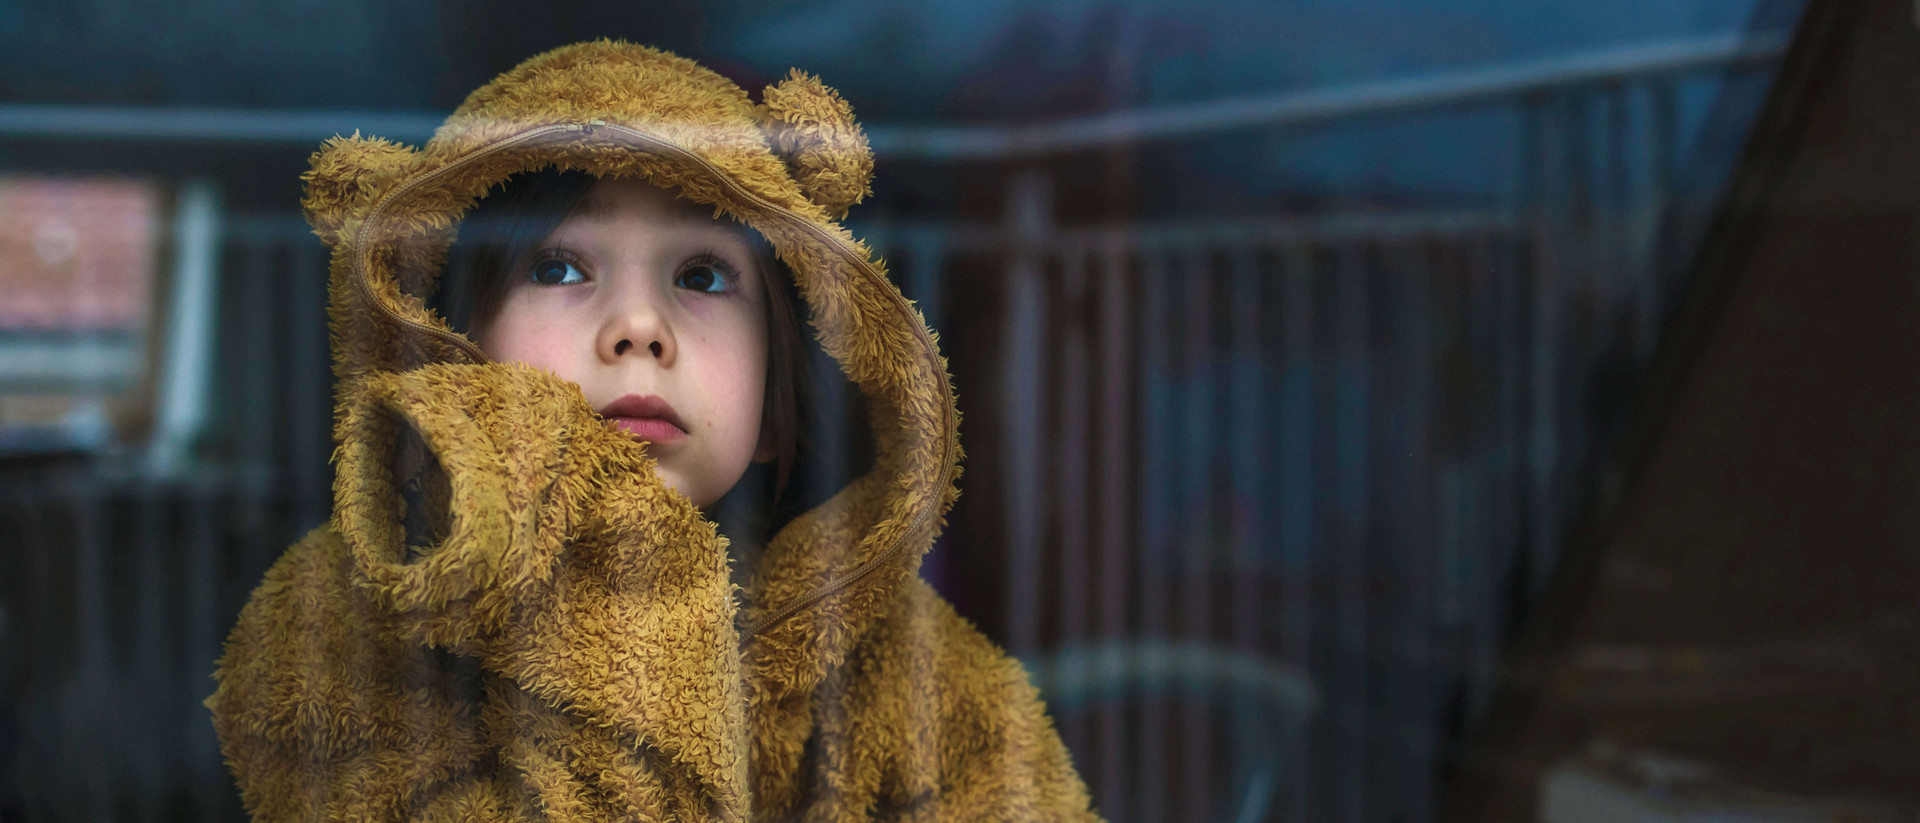 Ein Kind mit braunen Haaren blickt traurig in die Ferne. Es trägt ein Bärenkostüm und wirkt einsam. 